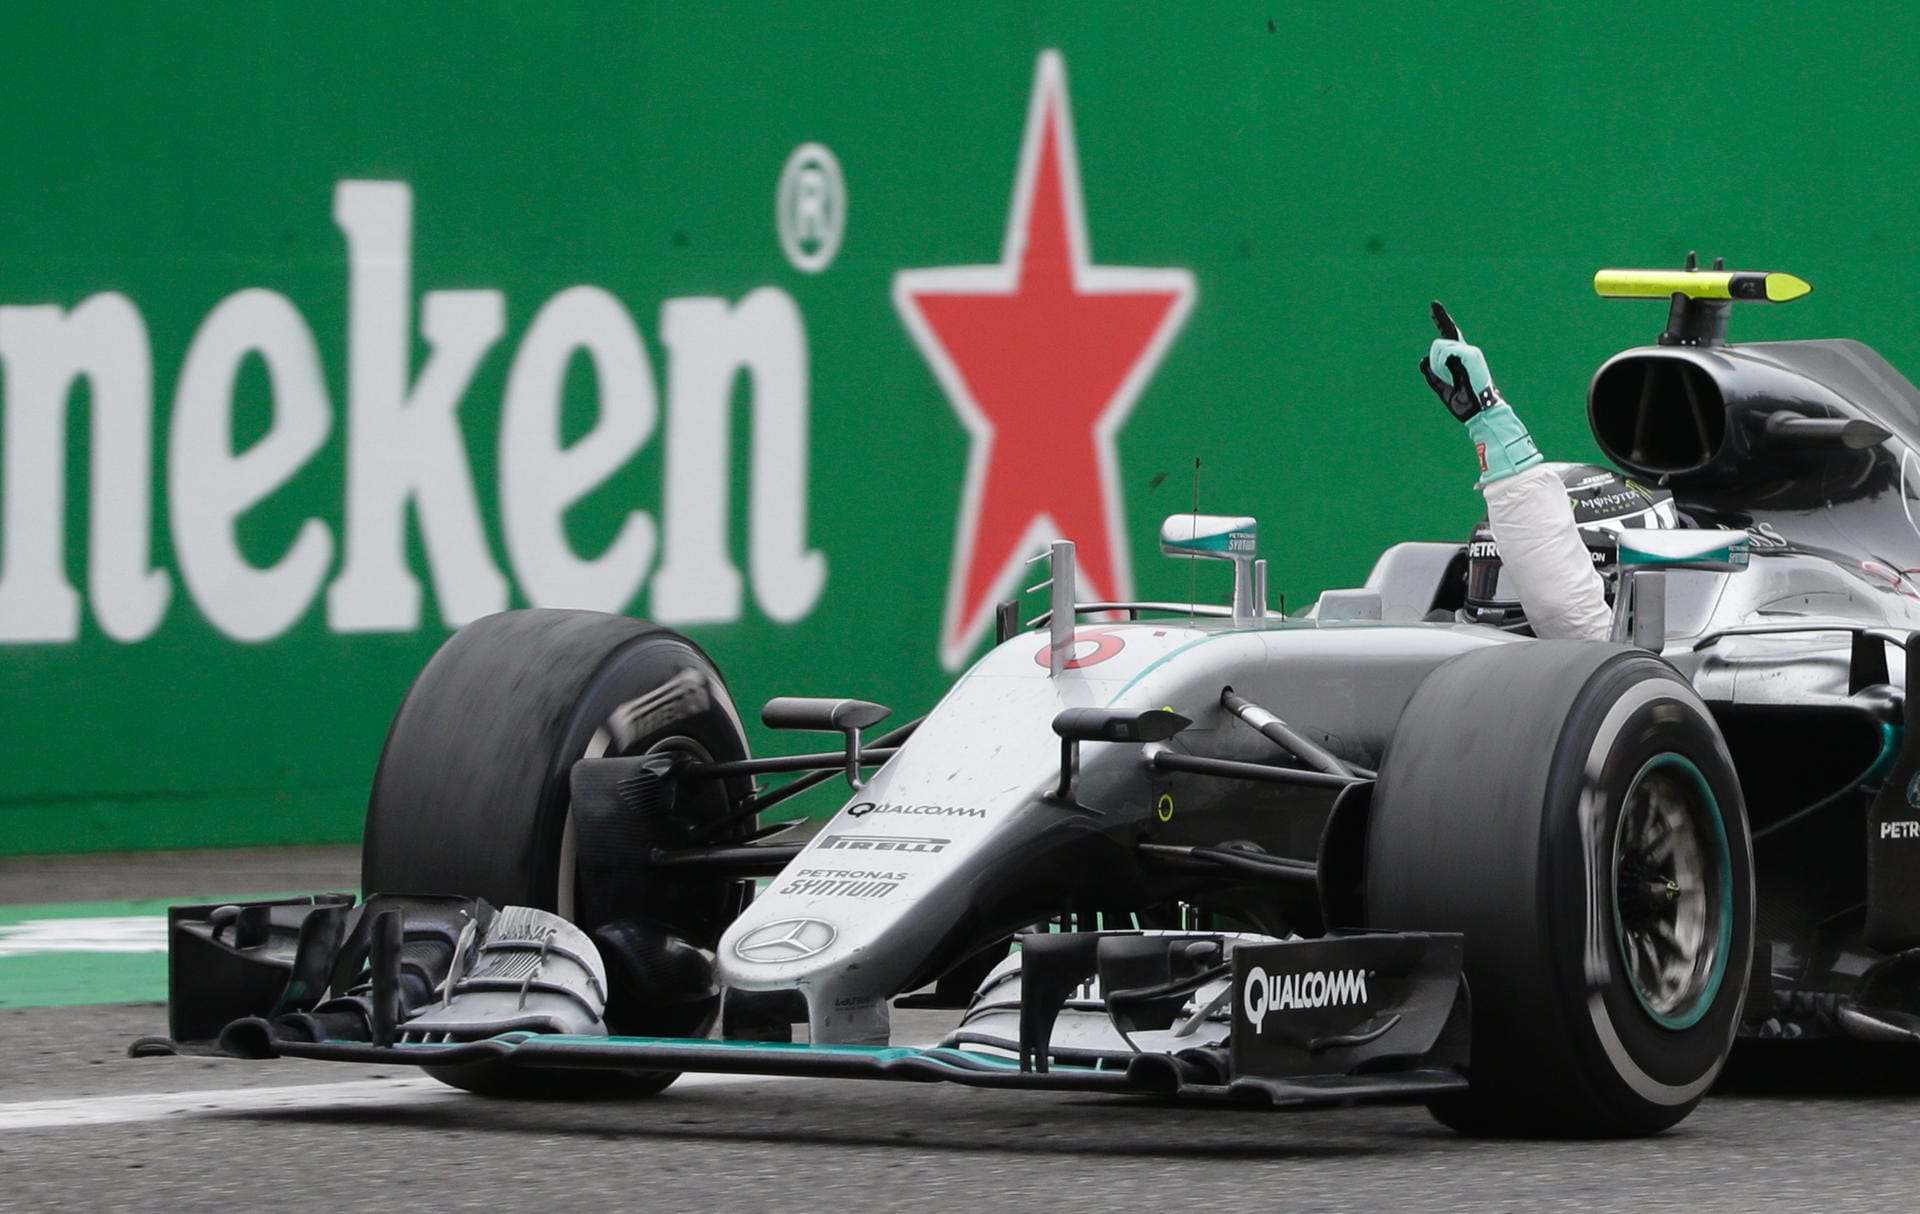 Seht her, ich bin der Gewinner! Nico Rosberg jubelt über seinen ersten Sieg in Italien - zugleich sein 21. Erfolg in der Formel 1.